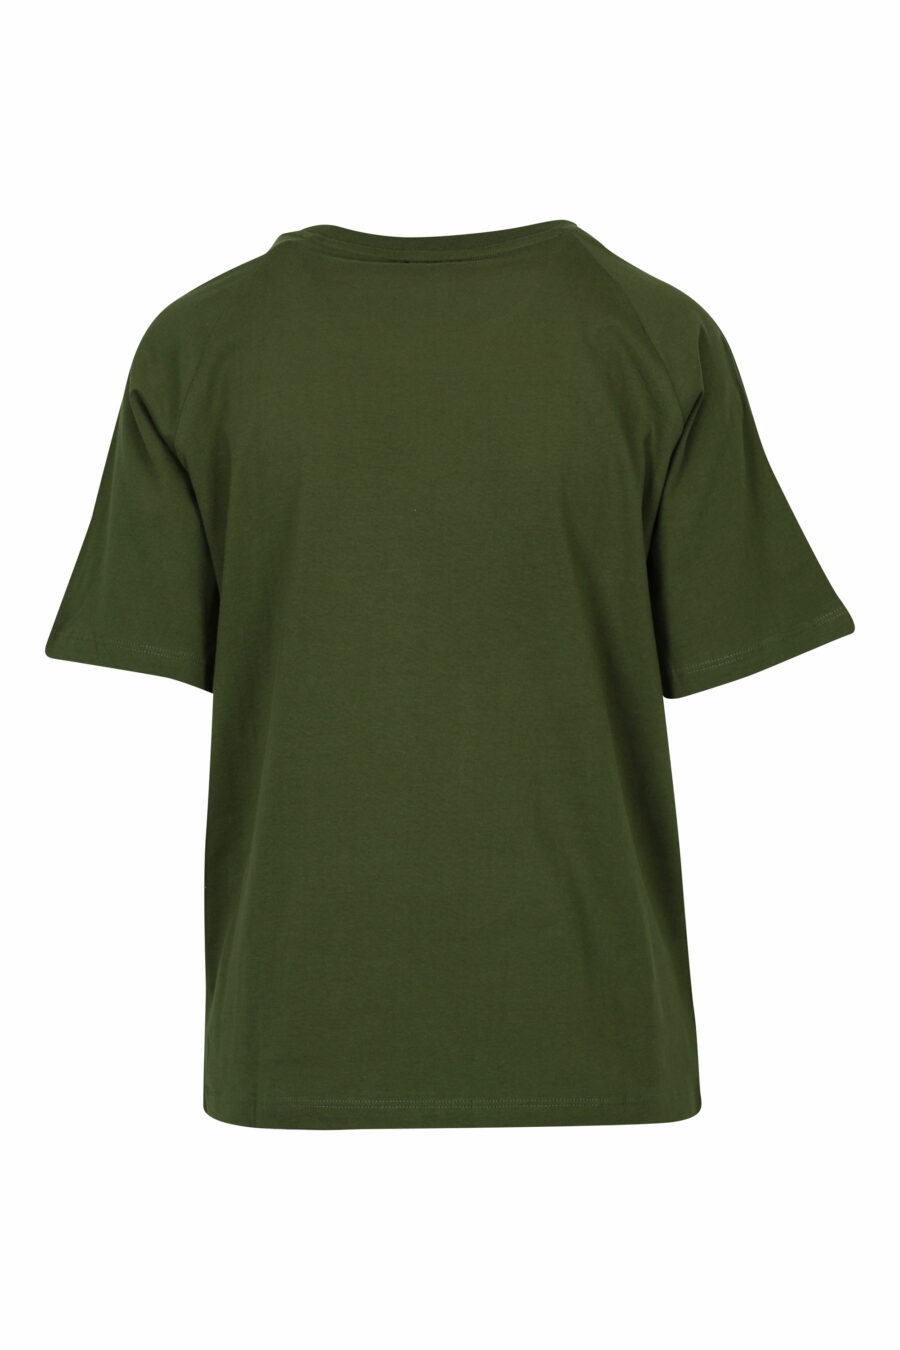 Camiseta verde militar con maxilogo parche dorado - 8058610852832 1